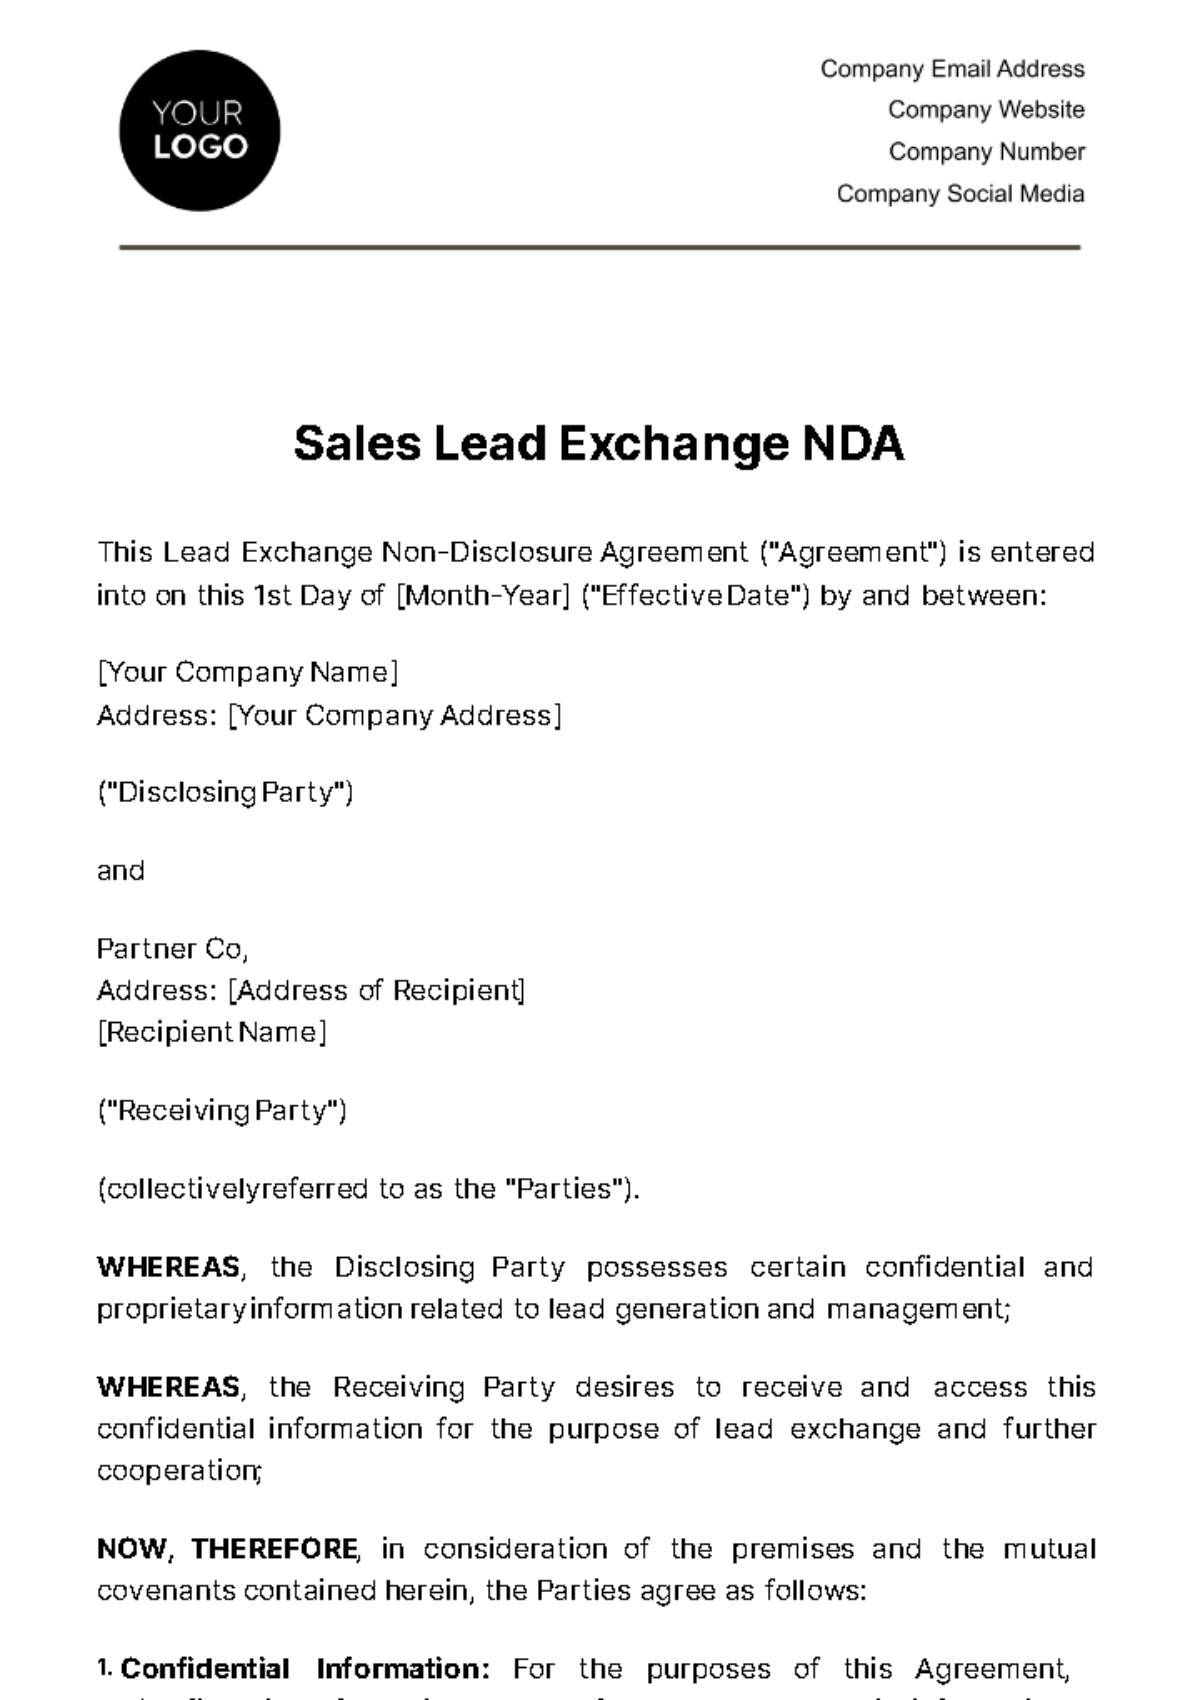 Free Sales Lead Exchange NDA Template